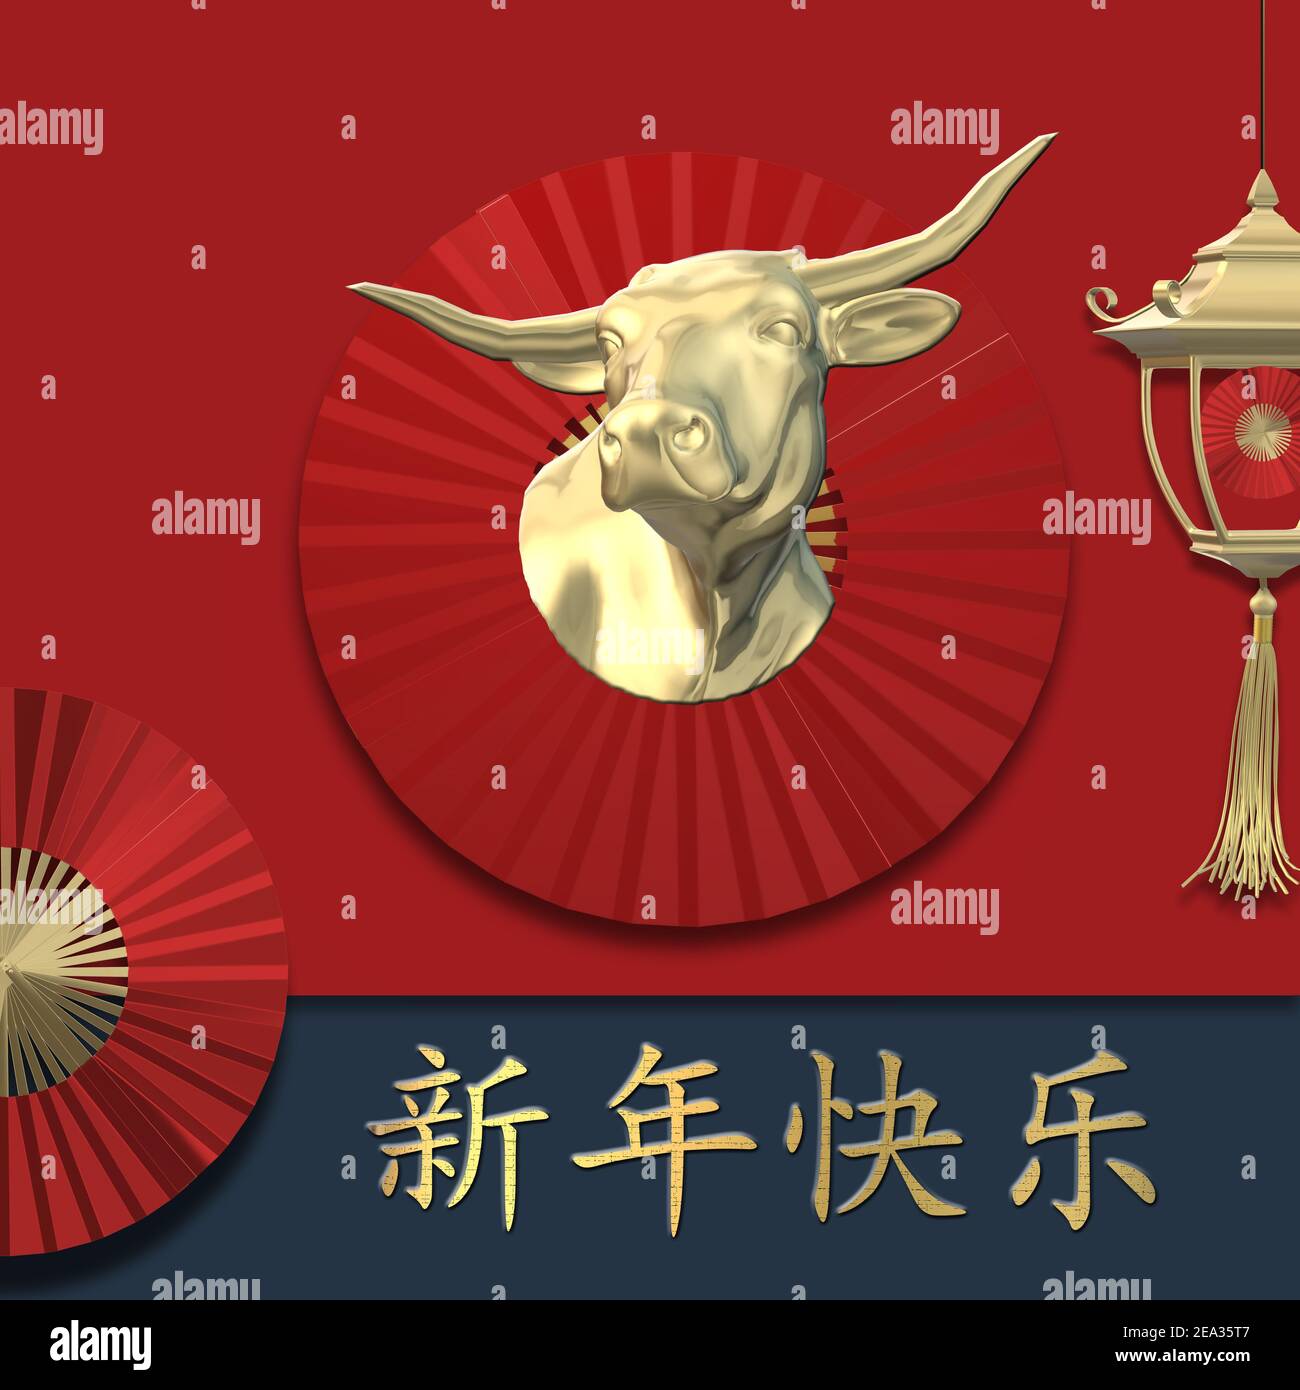 Symbole bœuf du nouvel an chinois 2021, lanterne rouge, ventilateur sur fond rouge. Texte doré traduction en chinois Bonne Année. Design pour l'Orient 2021 New yea Banque D'Images